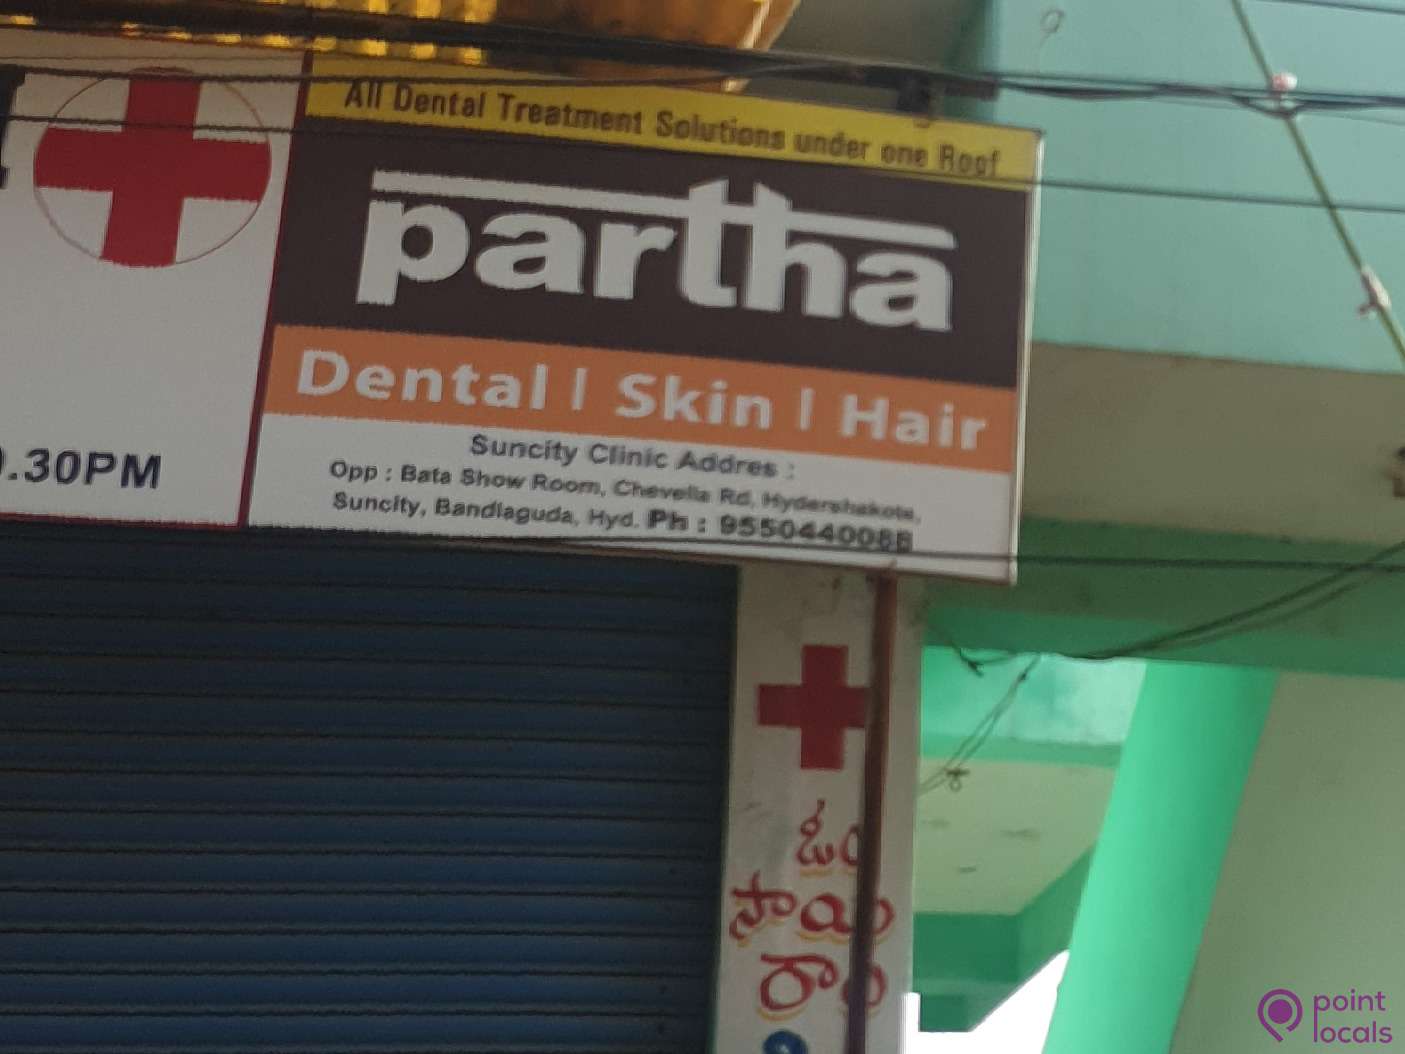 Partha Dental Skin & Hair - Clinic in Hyderabad,Telangana | Pointlocals